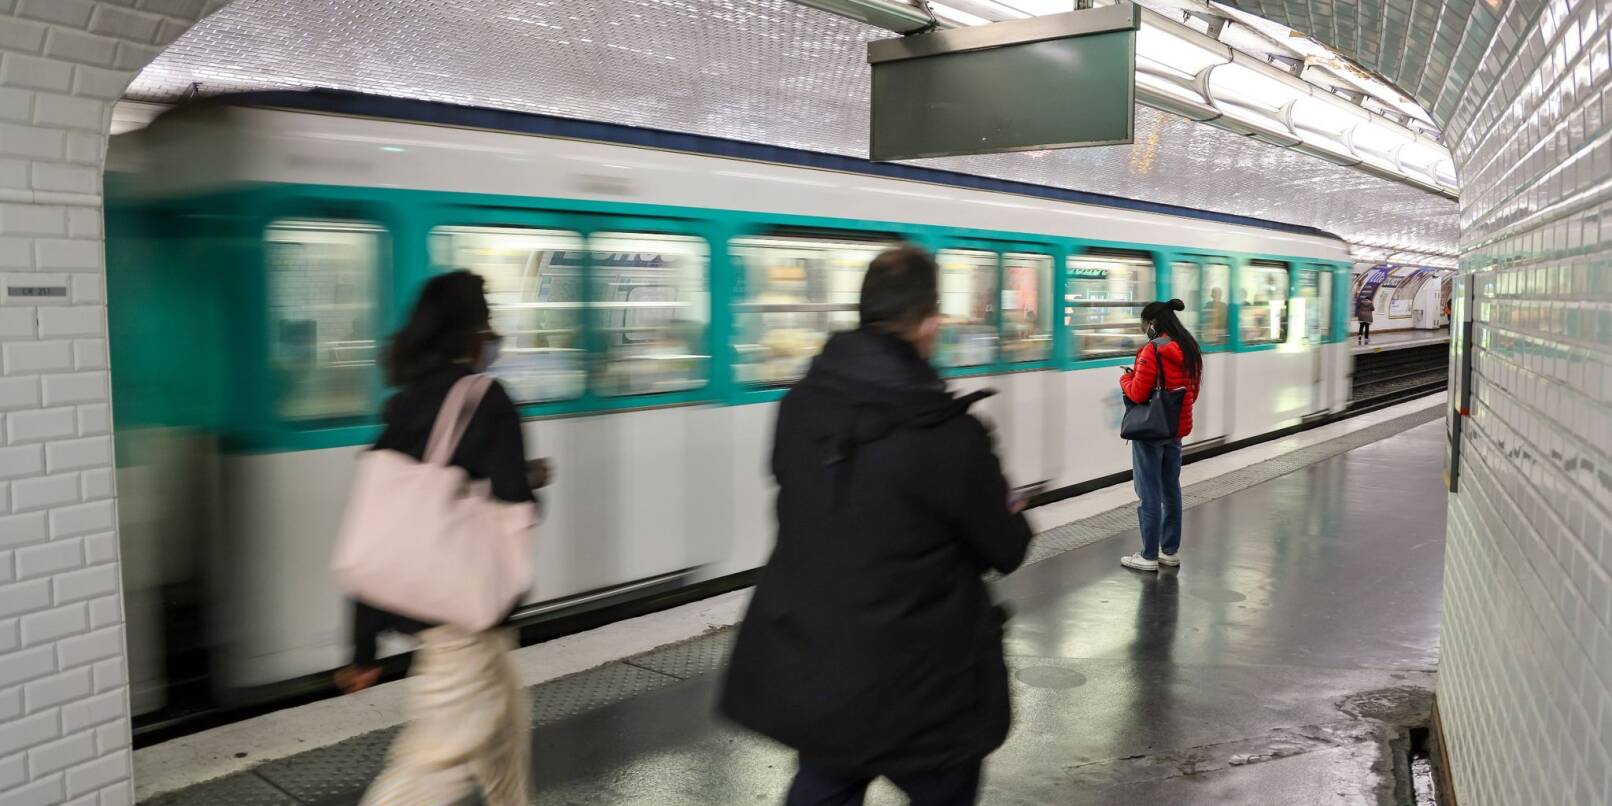 Fahrgäste benutzen eine Pariser Metro - kürzlich ist eine Frau an der Tür einer U-Bahn hängengeblieben und gestorben.